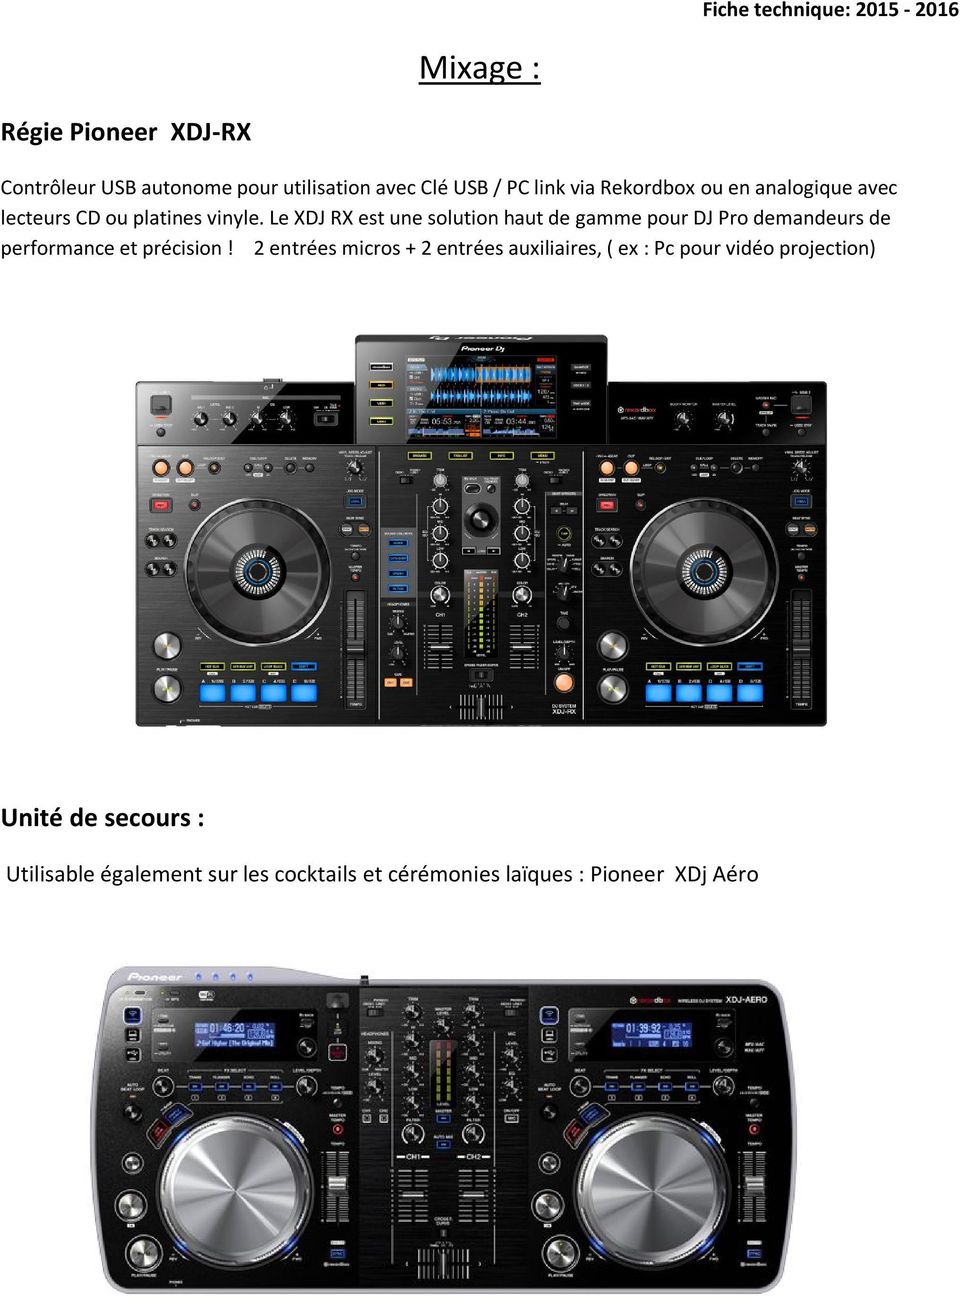 Le XDJ RX est une solution haut de gamme pour DJ Pro demandeurs de performance et précision!